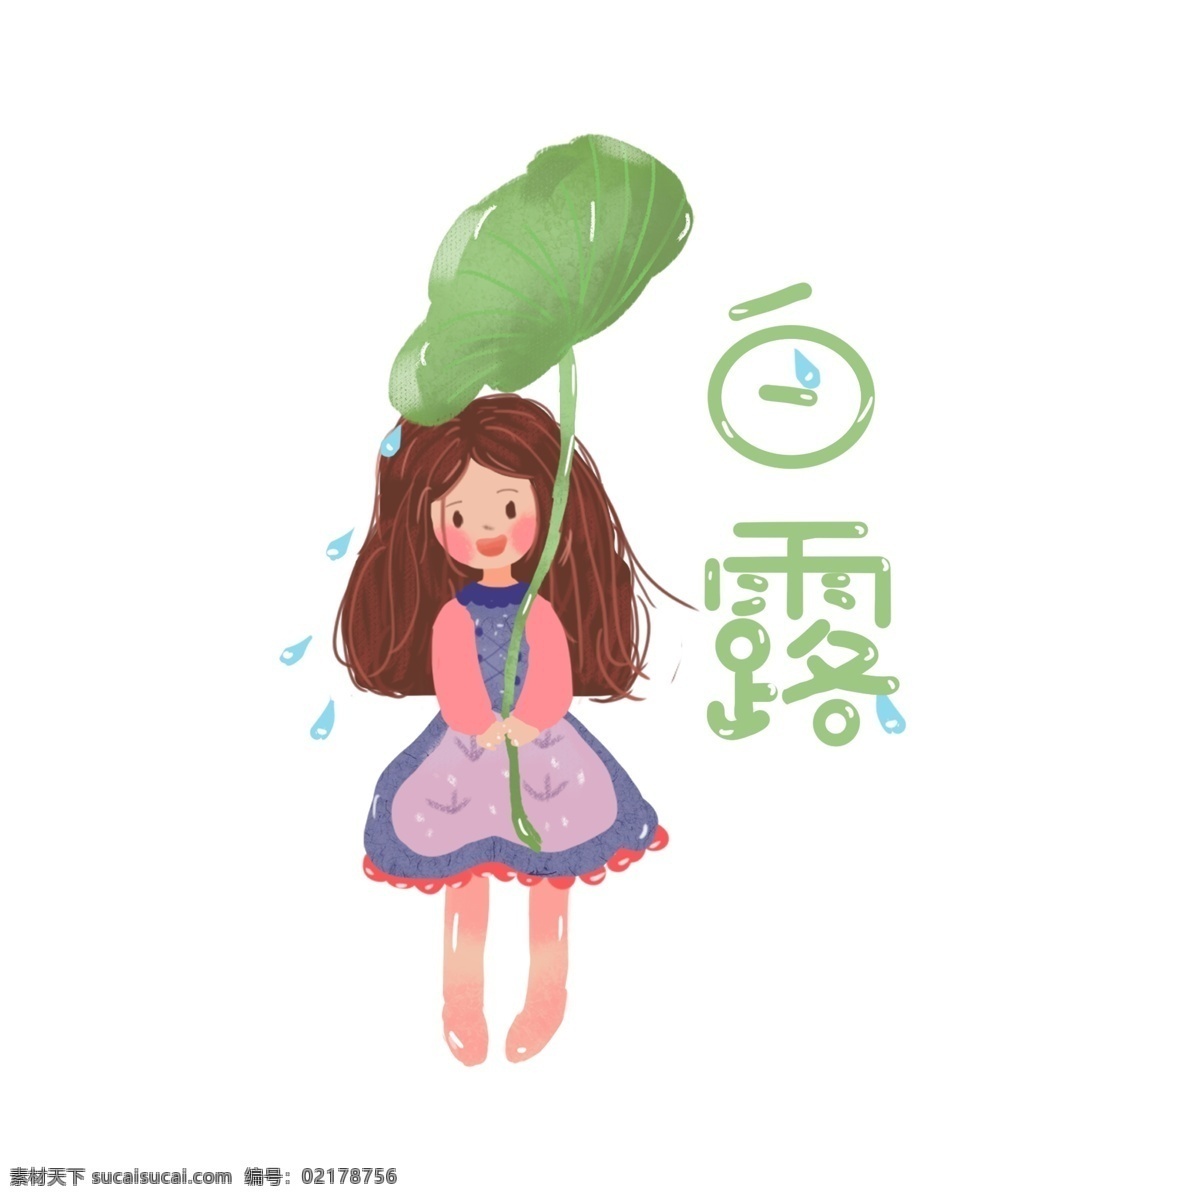 二十四节气 白露 女孩 人物 植物 绿色 插画 元素